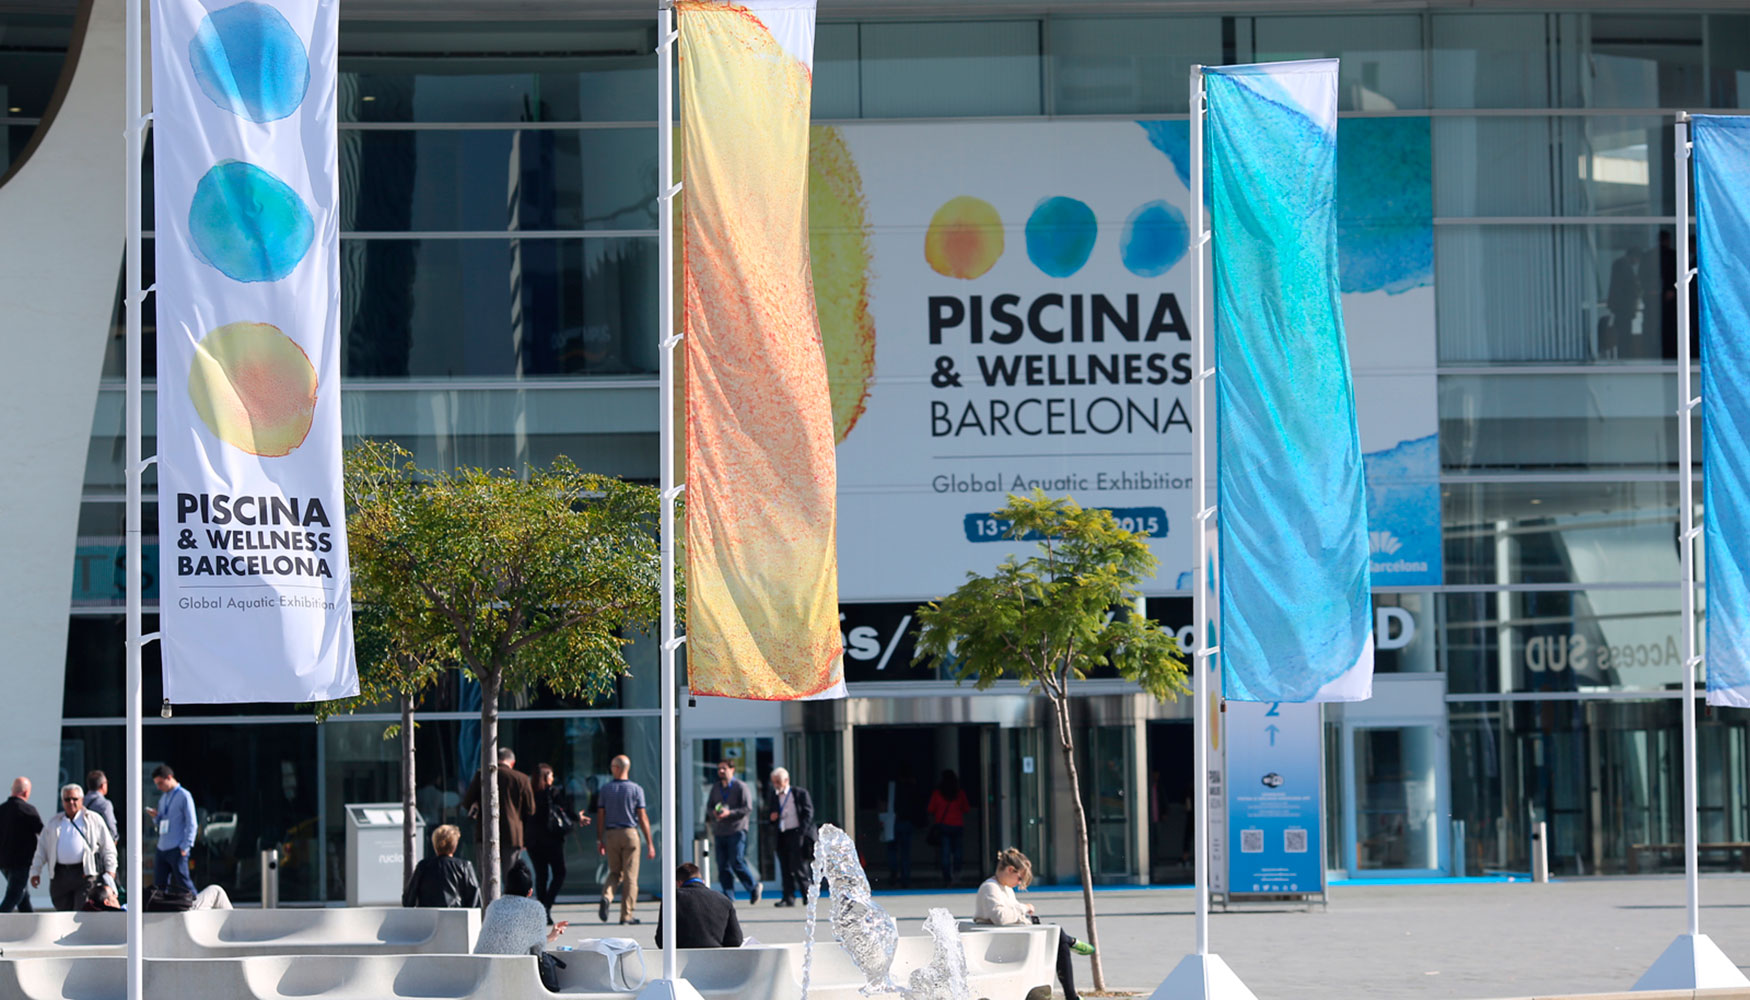 Piscina & Wellness Barcelona amplía su showroom que conecta el agua con